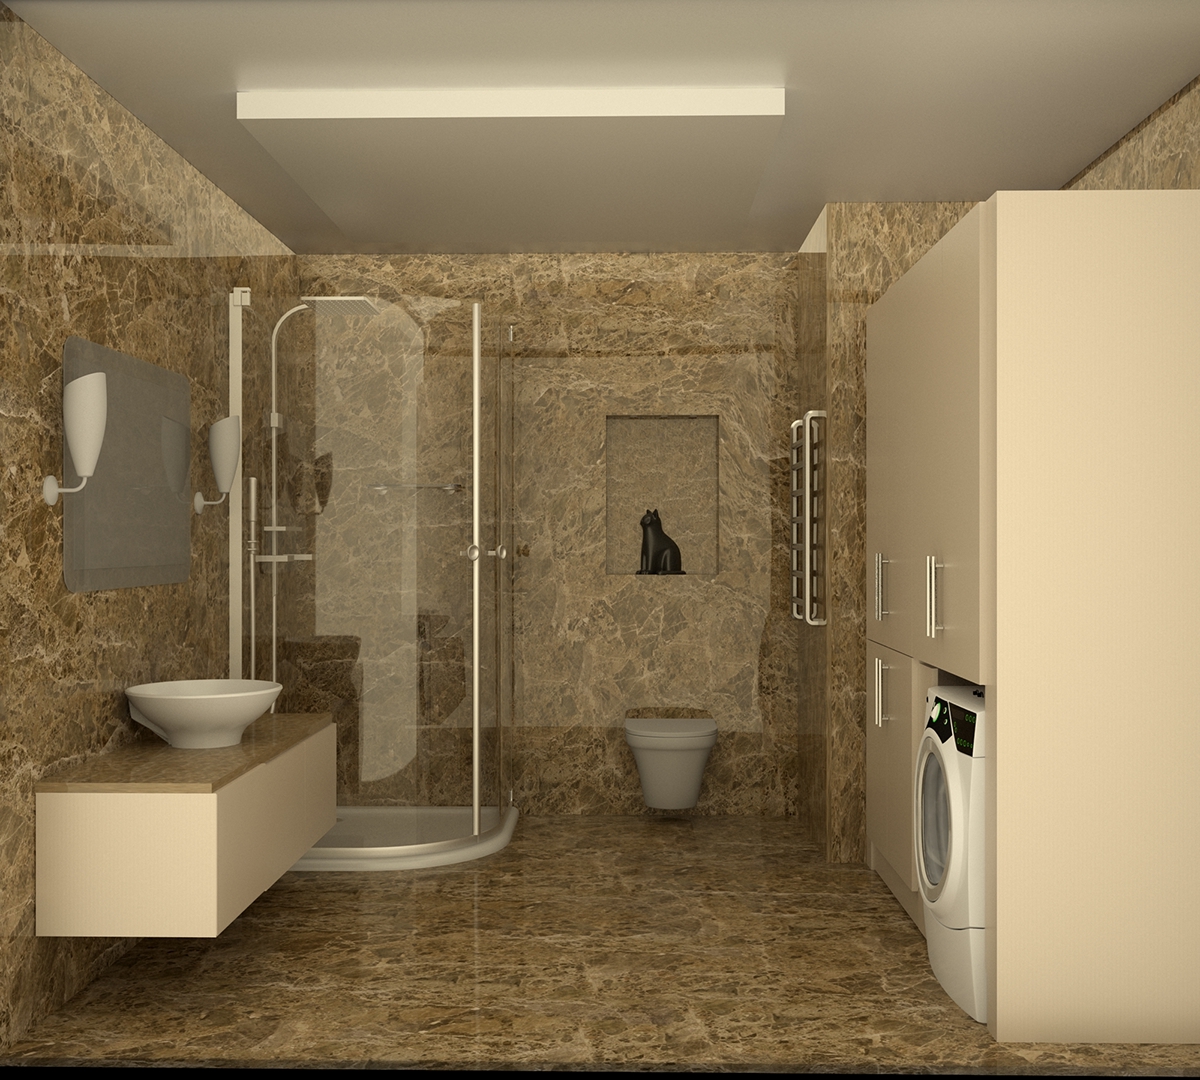 Banyo 3dmax onder güner öndergüner günermobilya mobilya bathroom